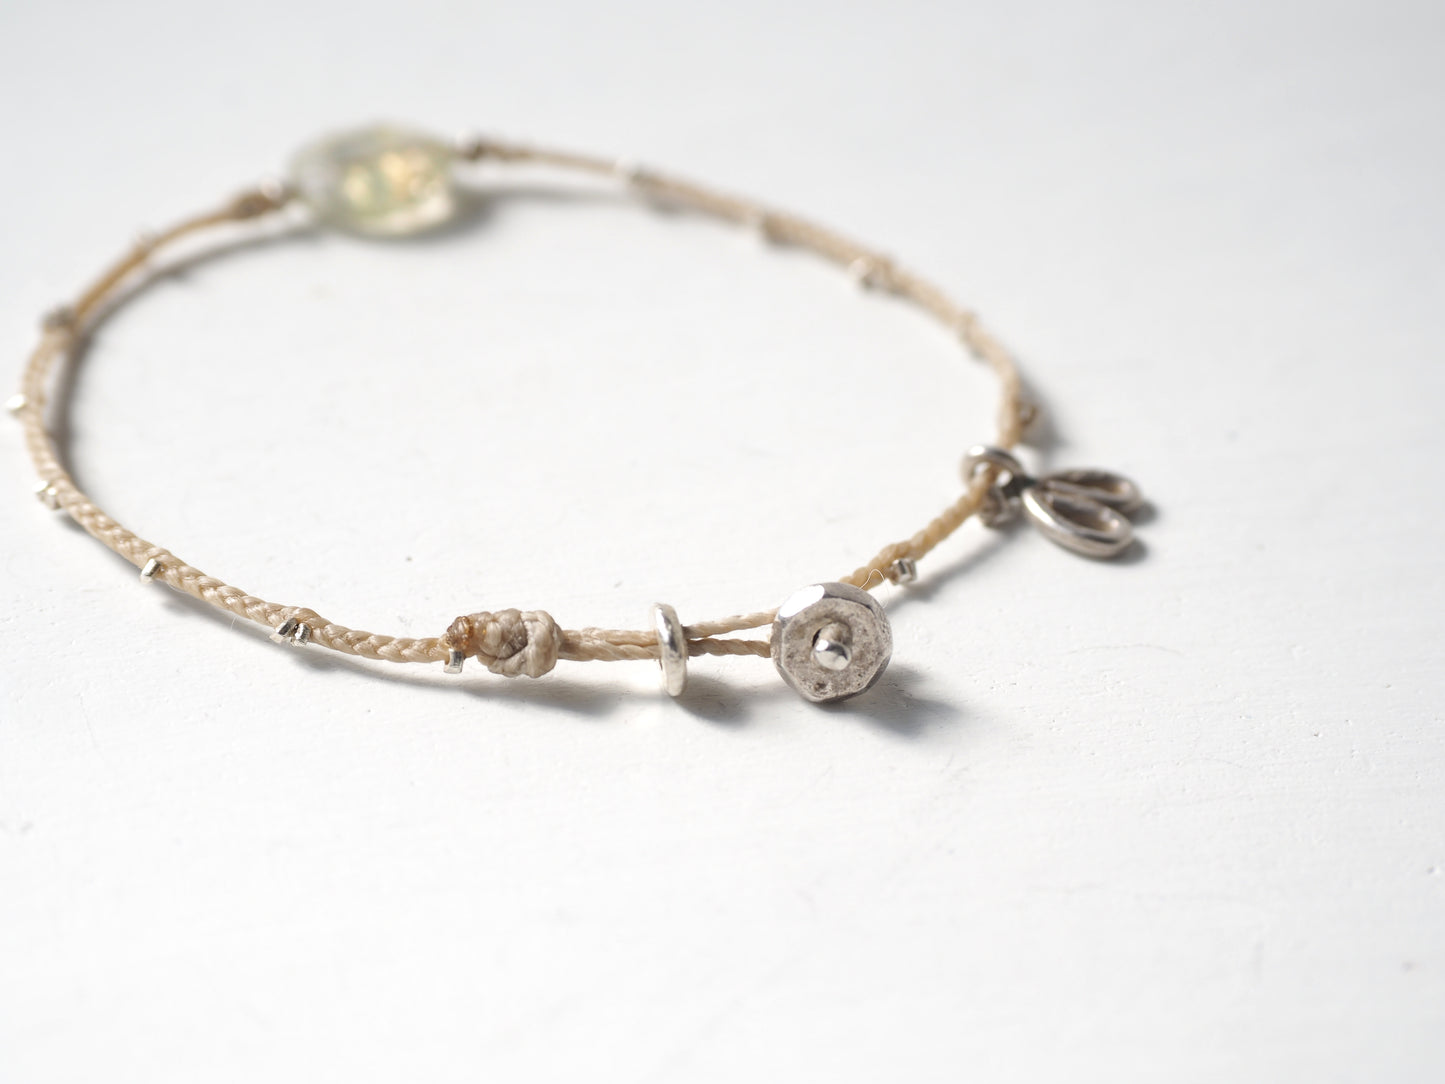 tourmaline quartz braided bracelet